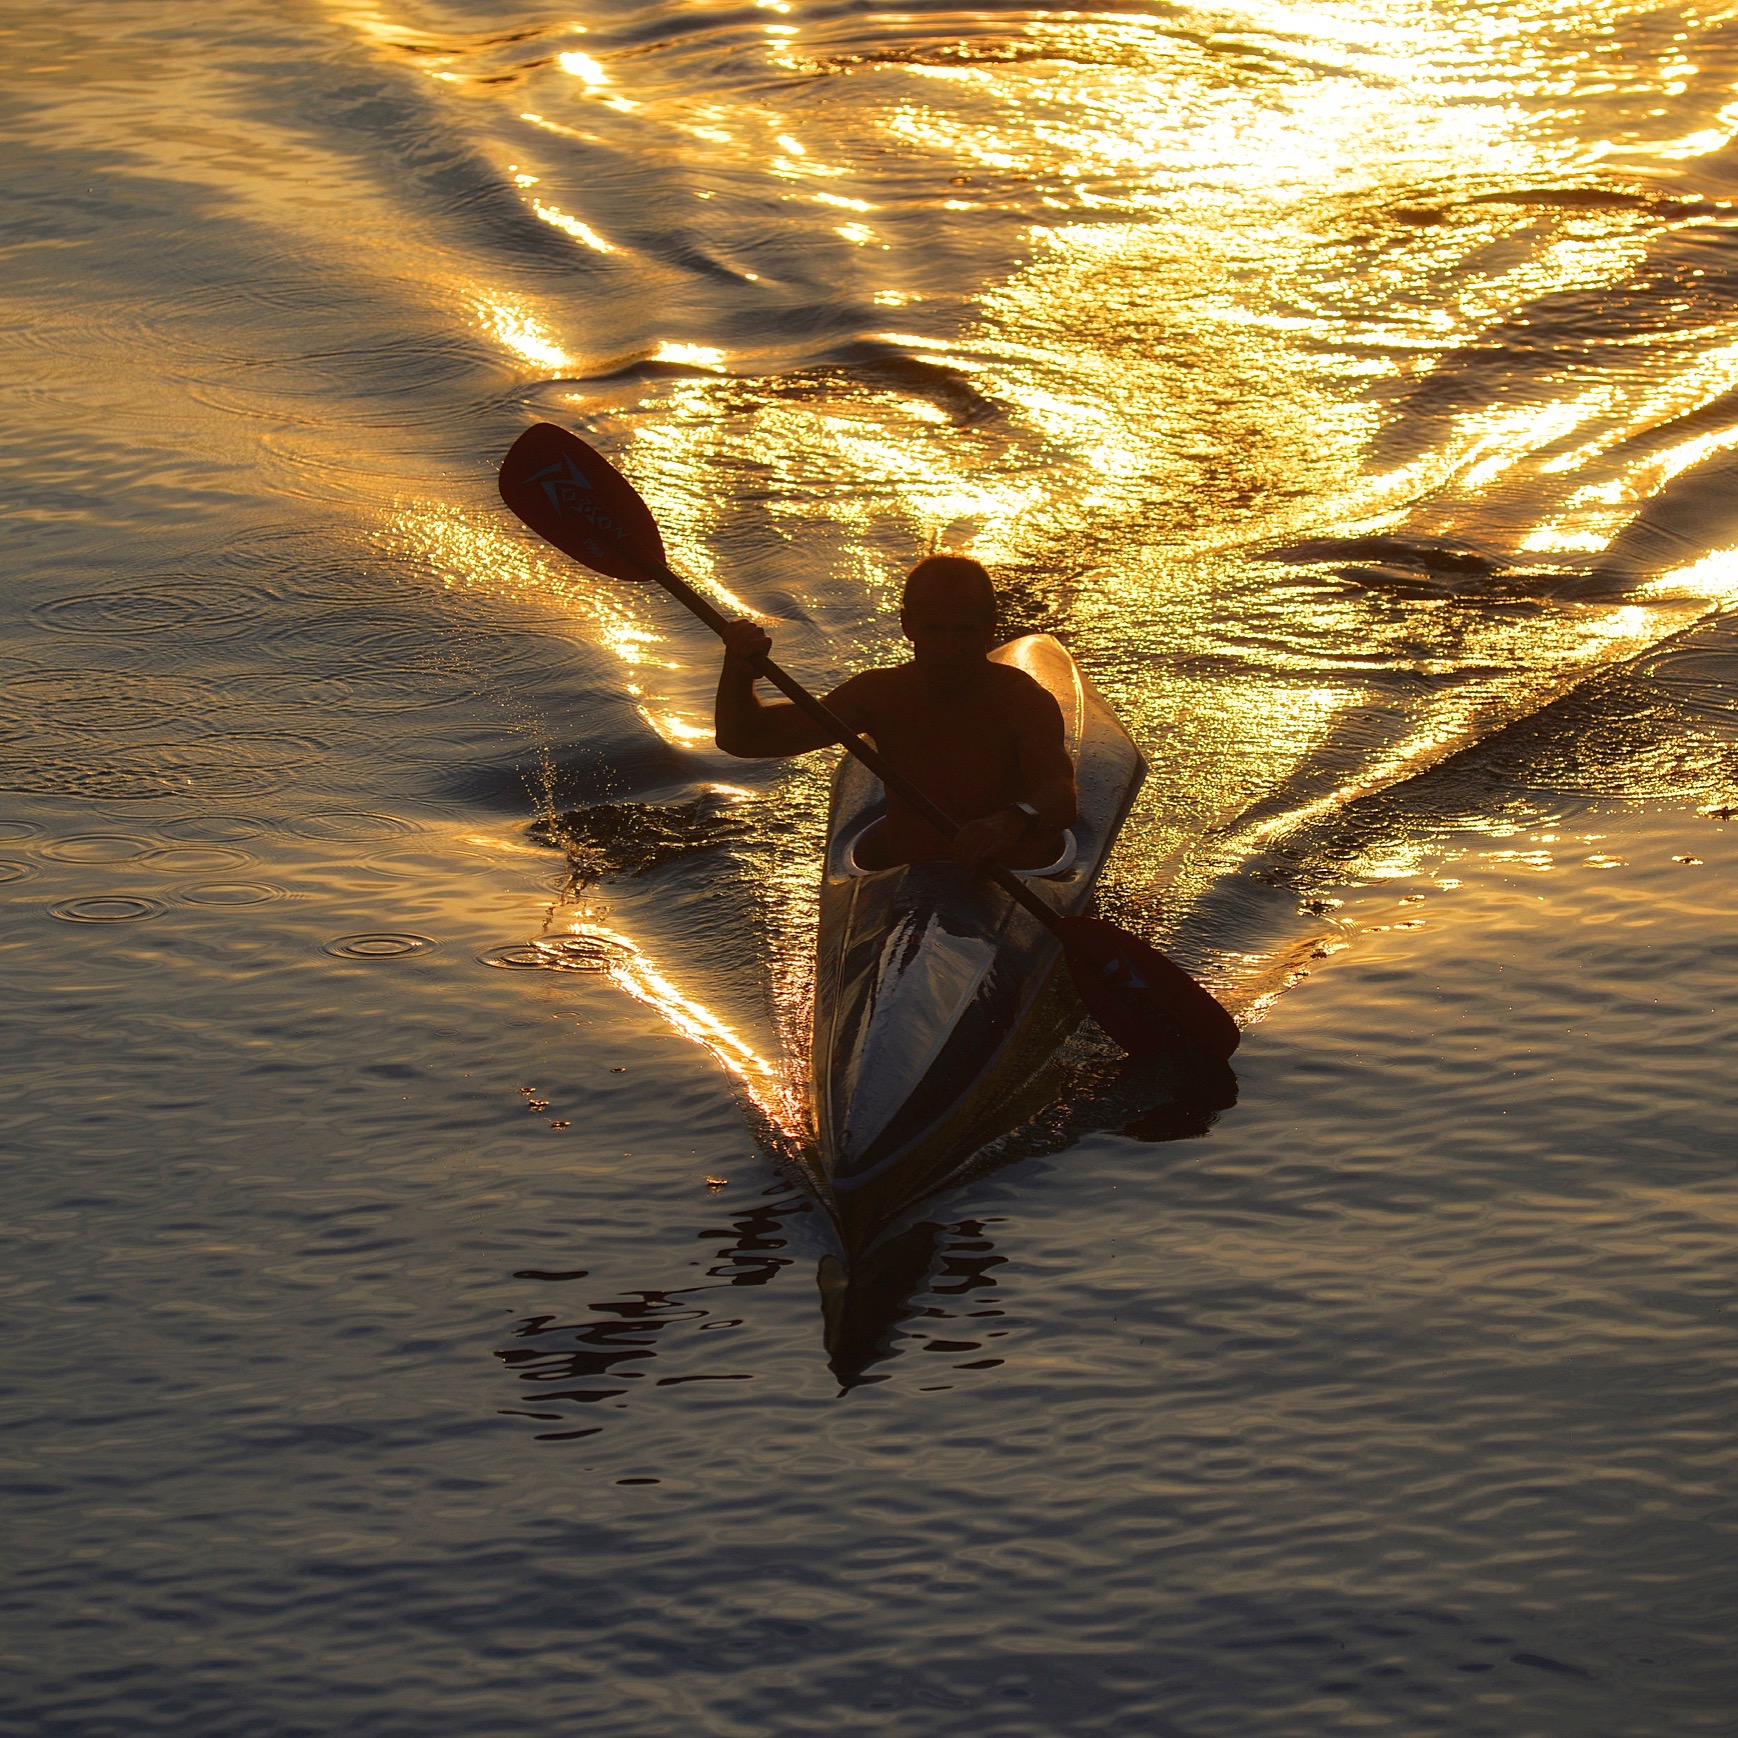 La canoa sul lago dorato...